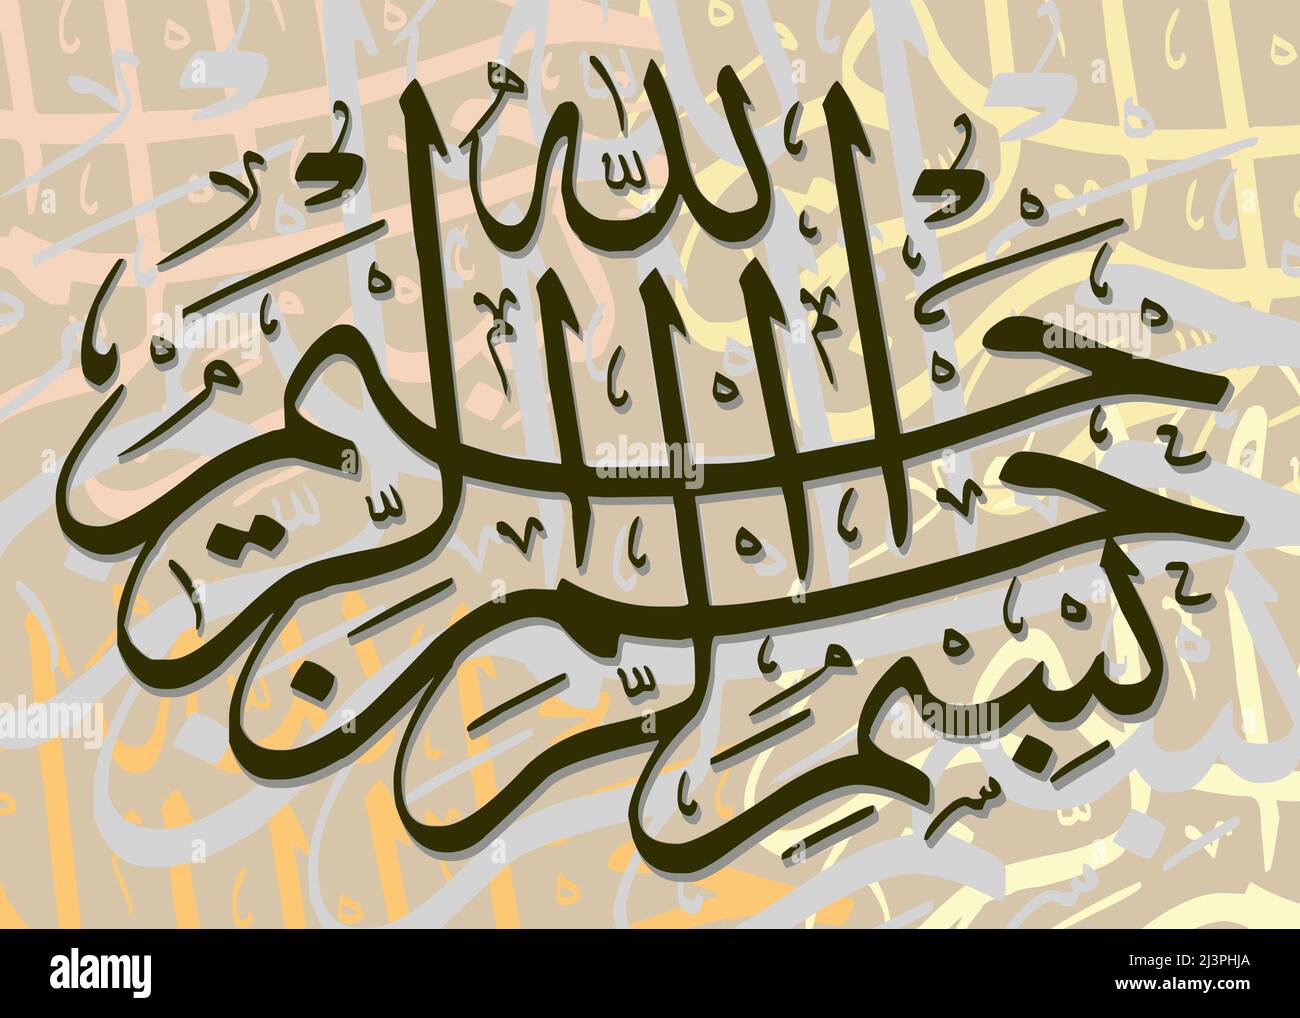 La Basmala dans une calligraphie islamique de 18th-siècle Illustration de Vecteur